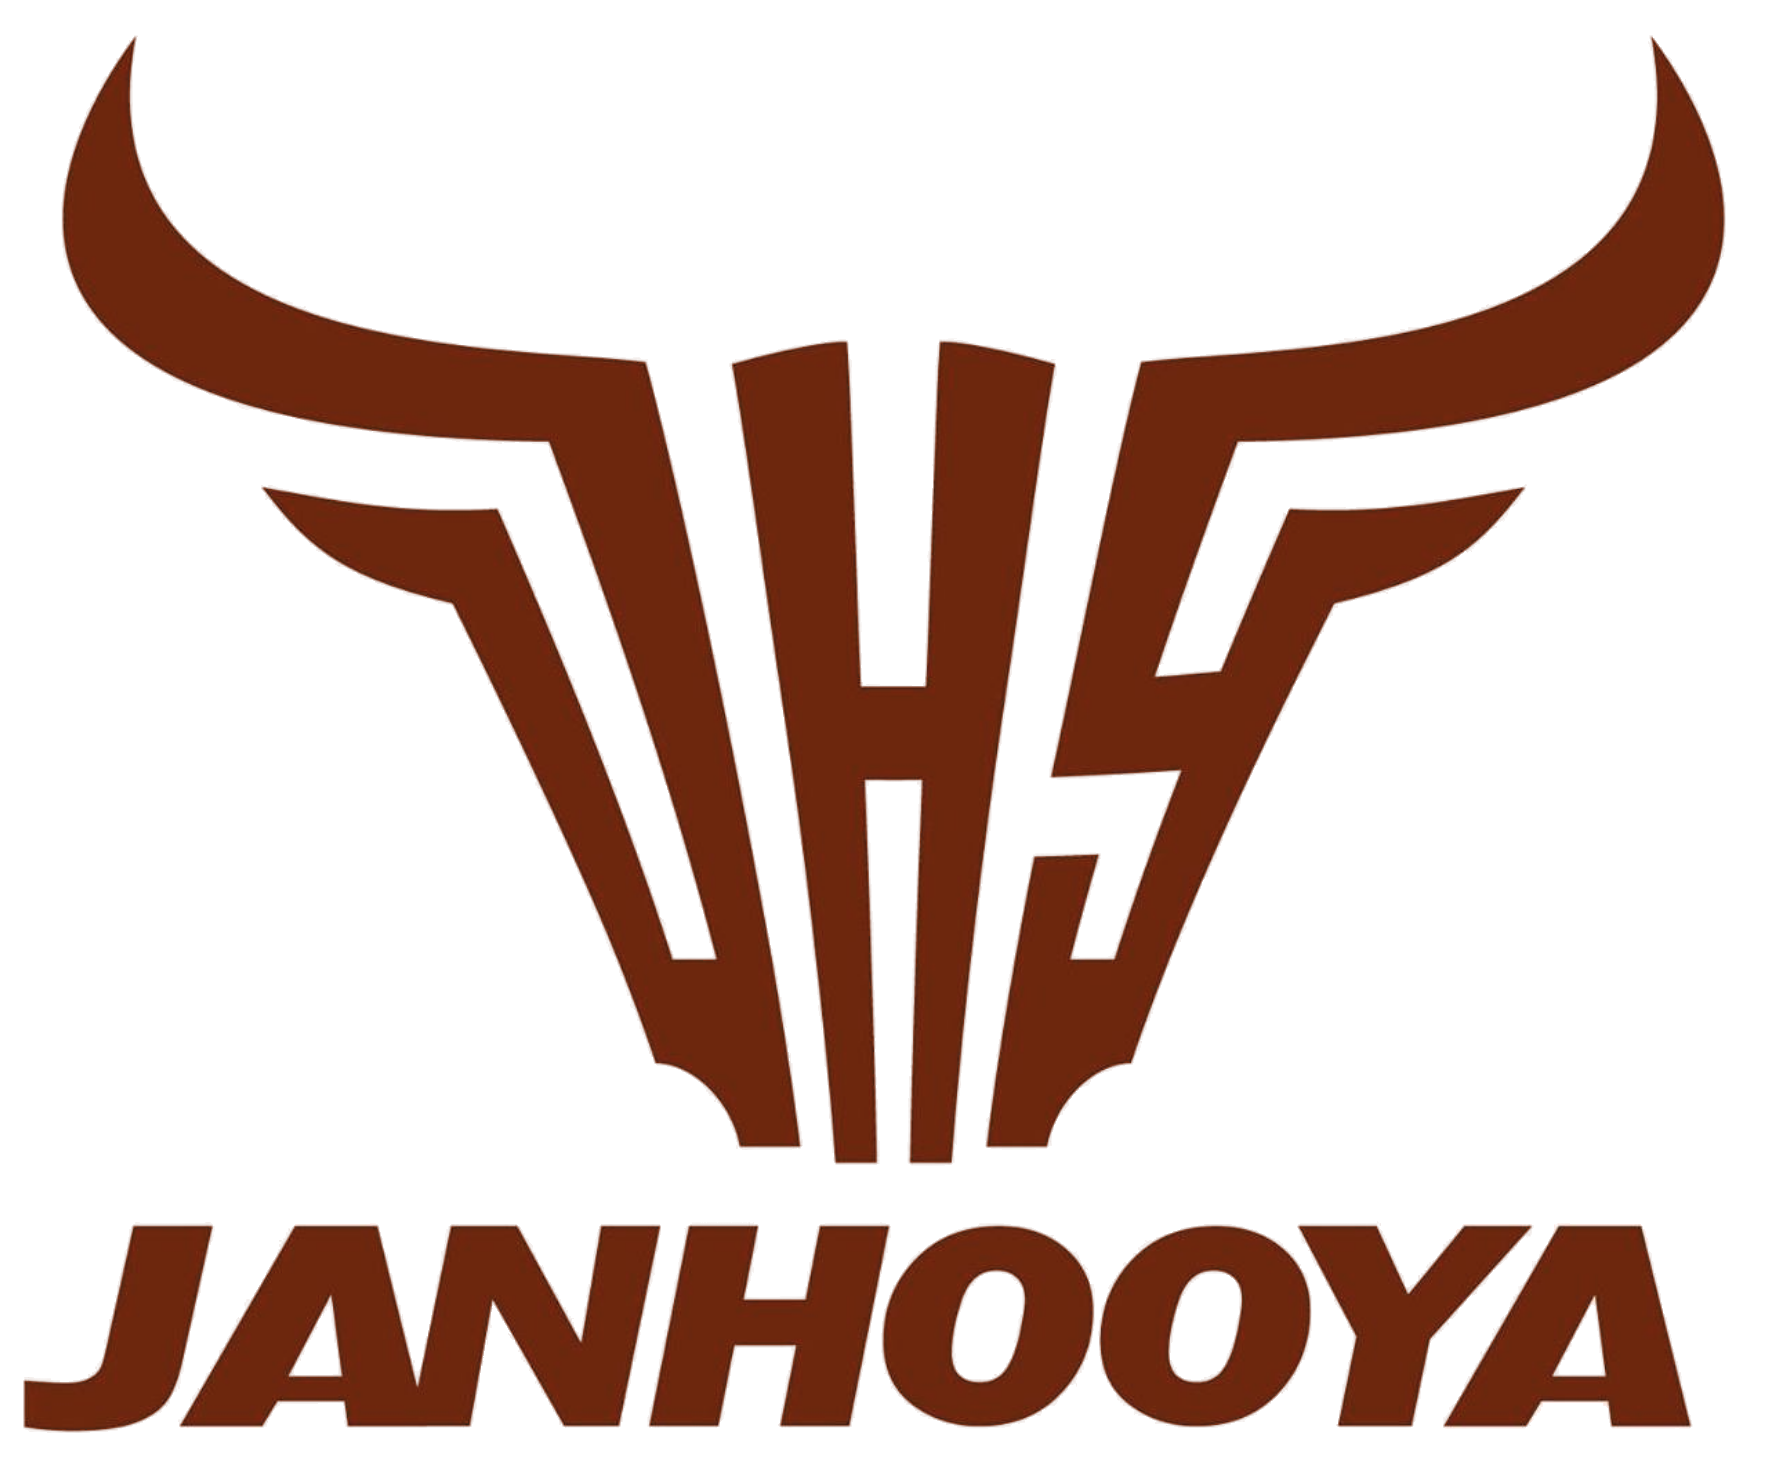 Janhooya